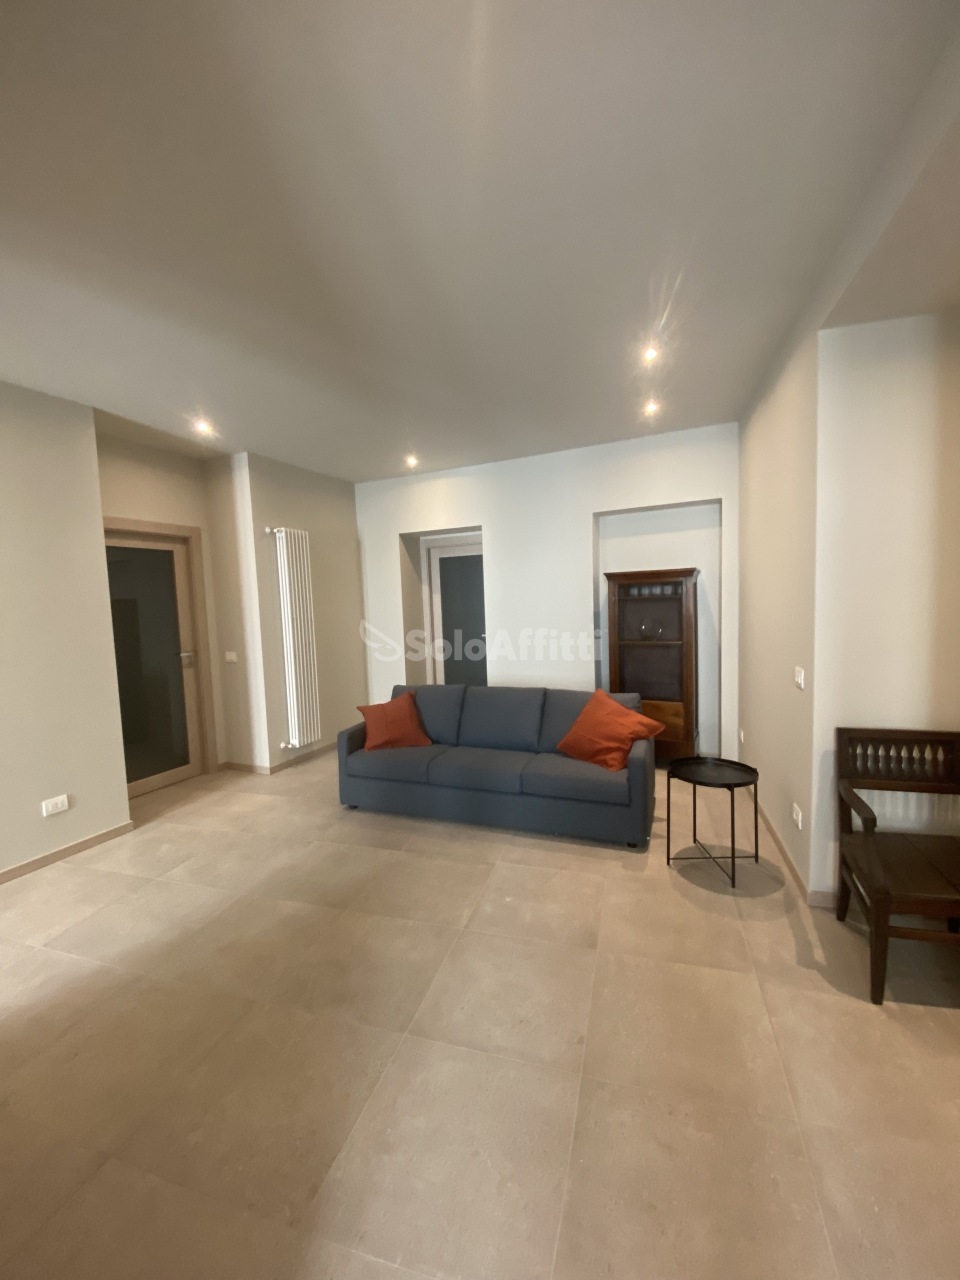 Appartamento in affitto a Novara, 3 locali, prezzo € 1.000 | CambioCasa.it